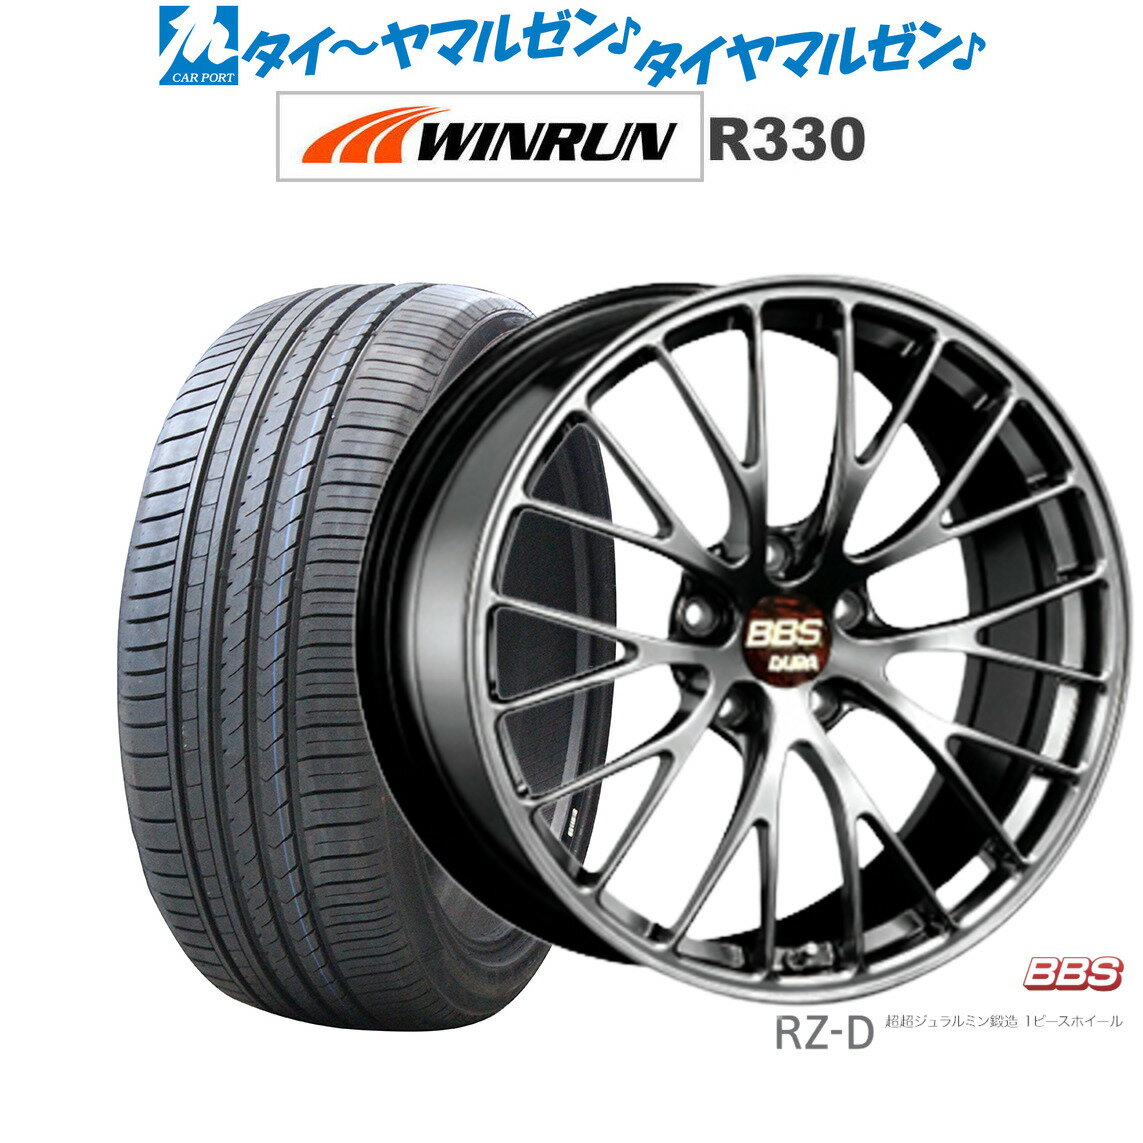 [5/20]割引クーポン配布新品 サマータイヤ ホイール4本セットBBS JAPAN RZ-D20インチ 8.5JWINRUN ウインラン R330245/35R20